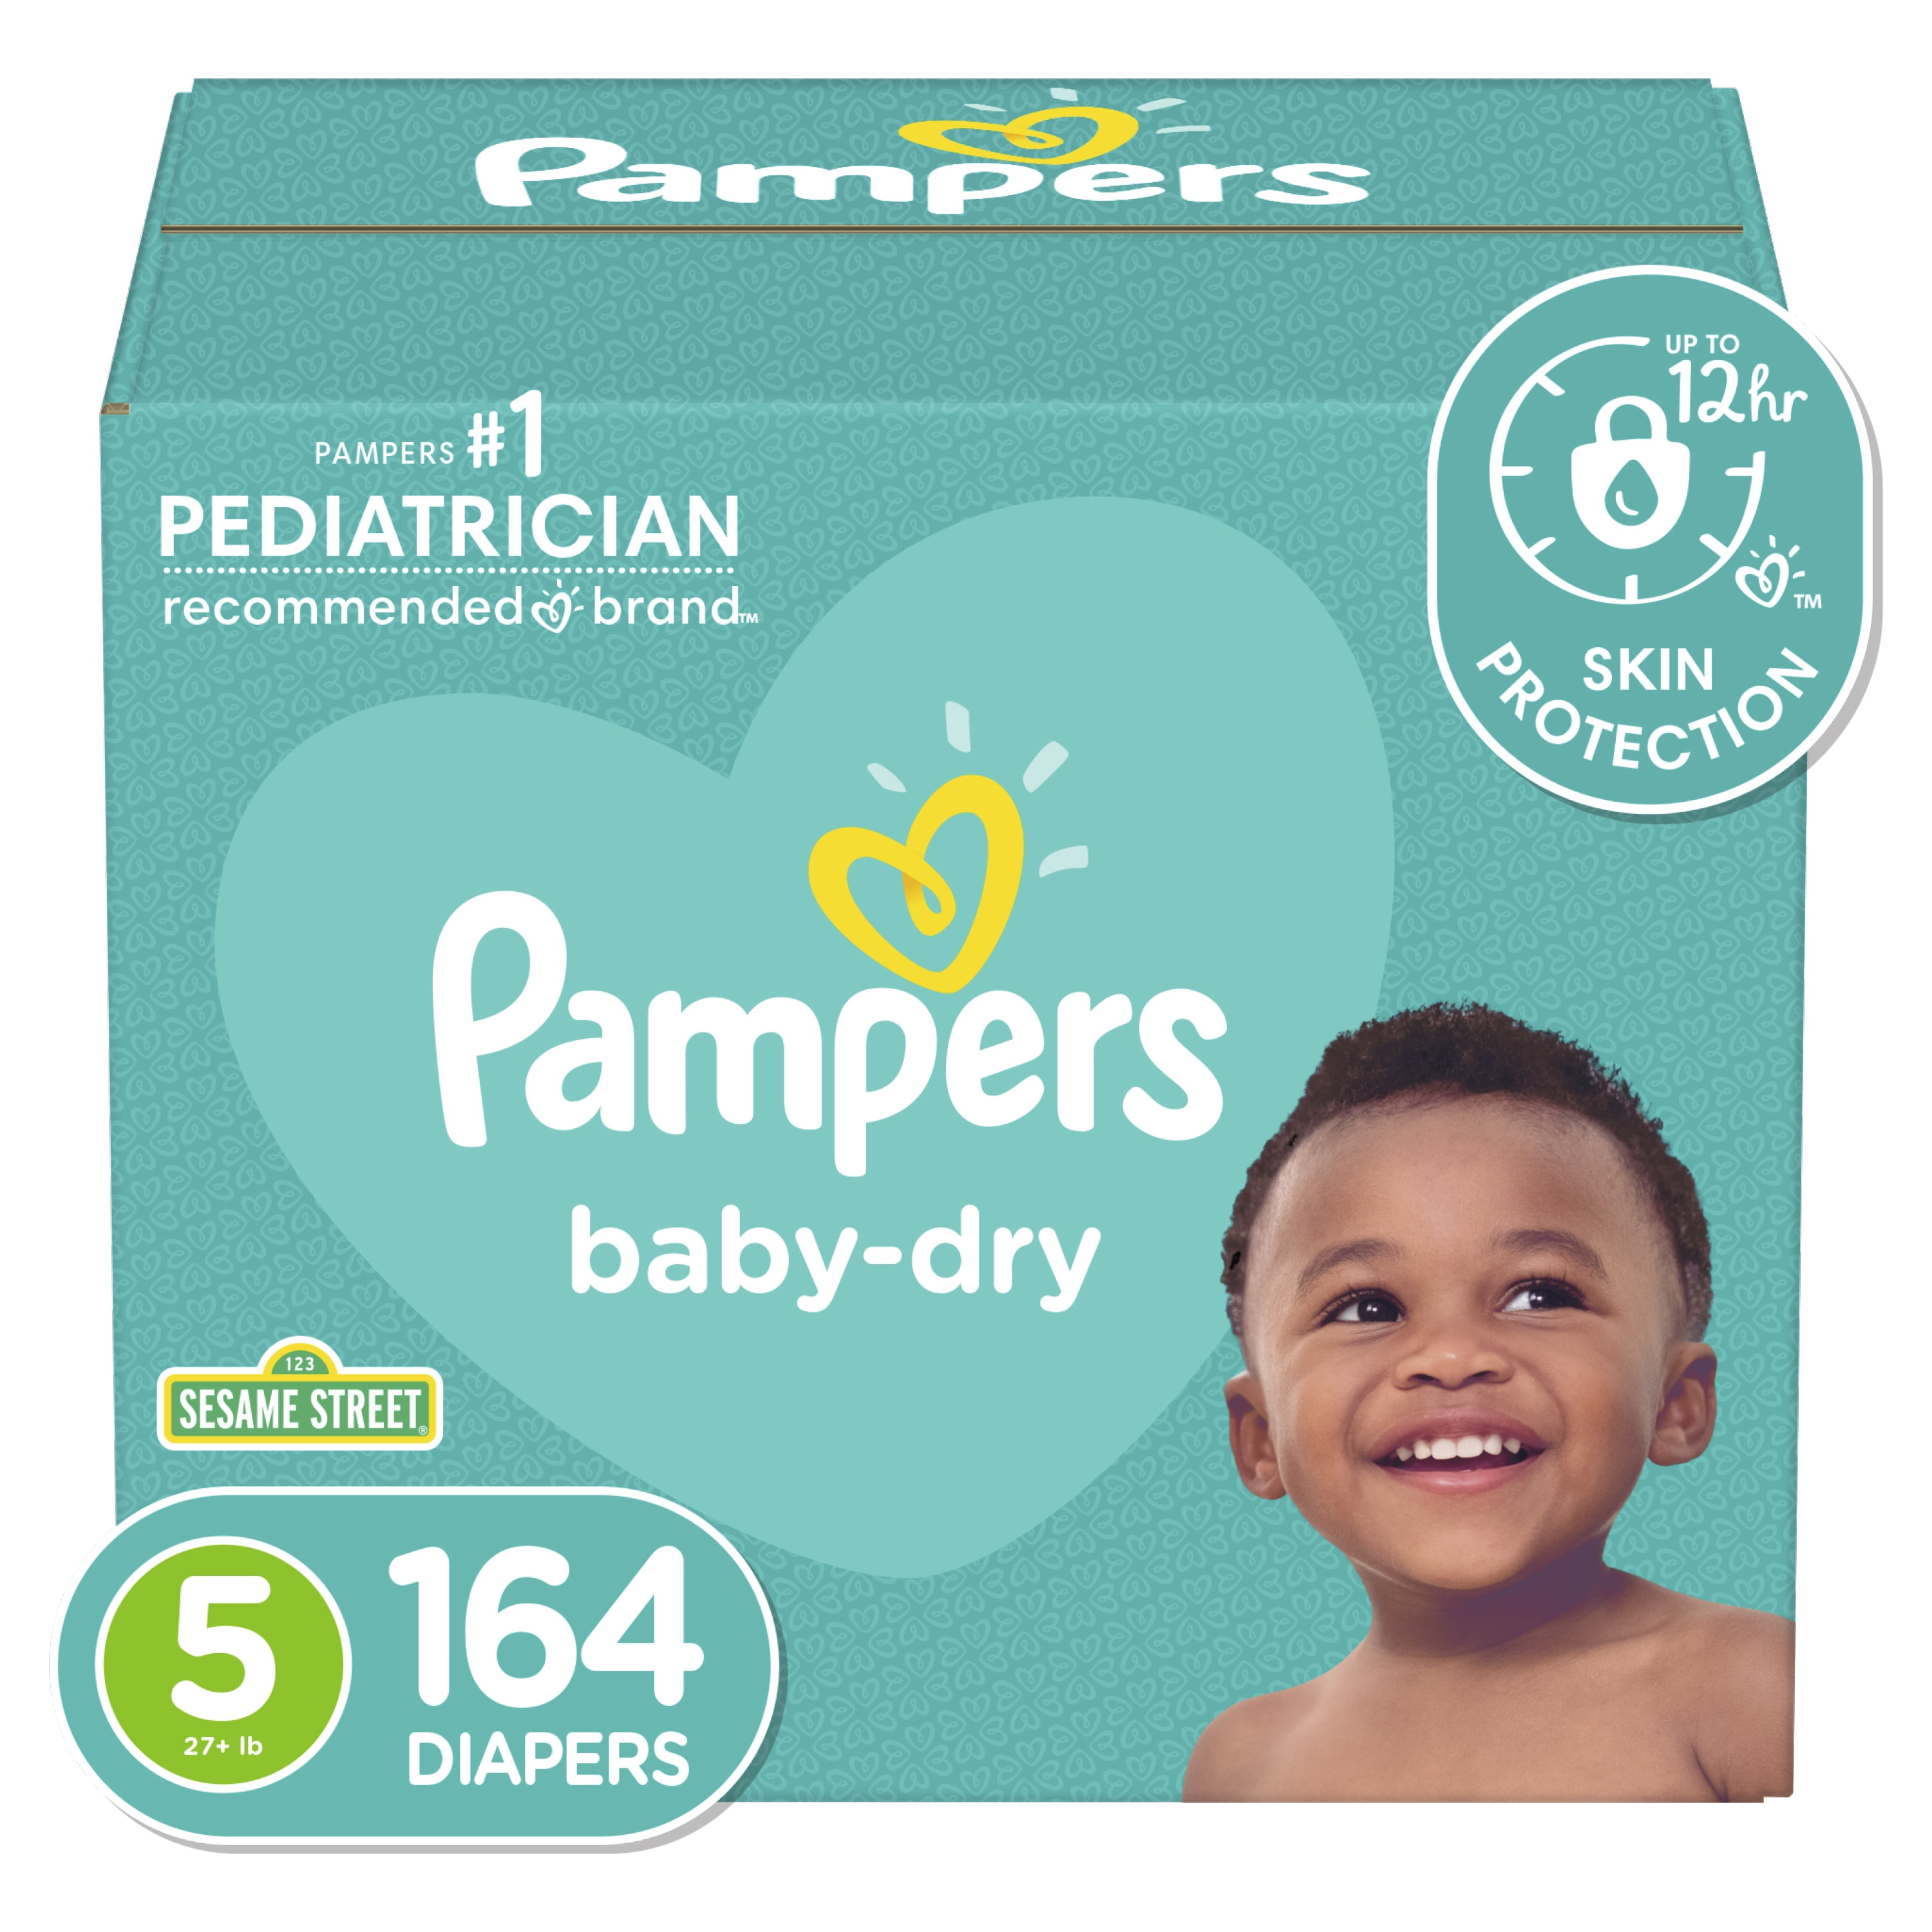 pampers babyvdry 1 box